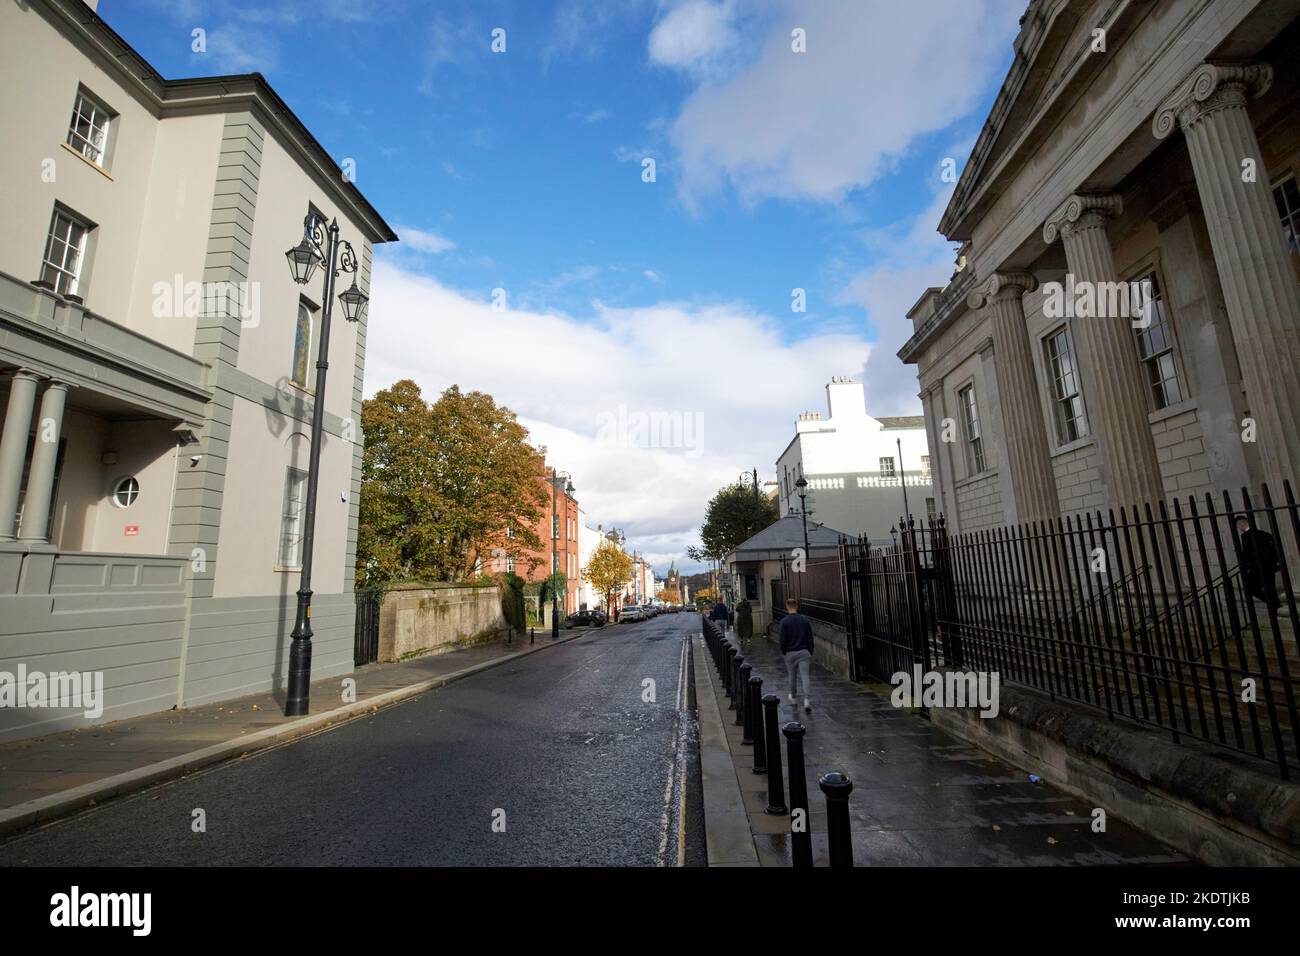 en regardant vers le bas de l'évêque st avec le palais de justice de rue d'évêque sur la droite du palais des évêques sur la gauche derry londonderry nord de l'irlande du royaume-uni Banque D'Images